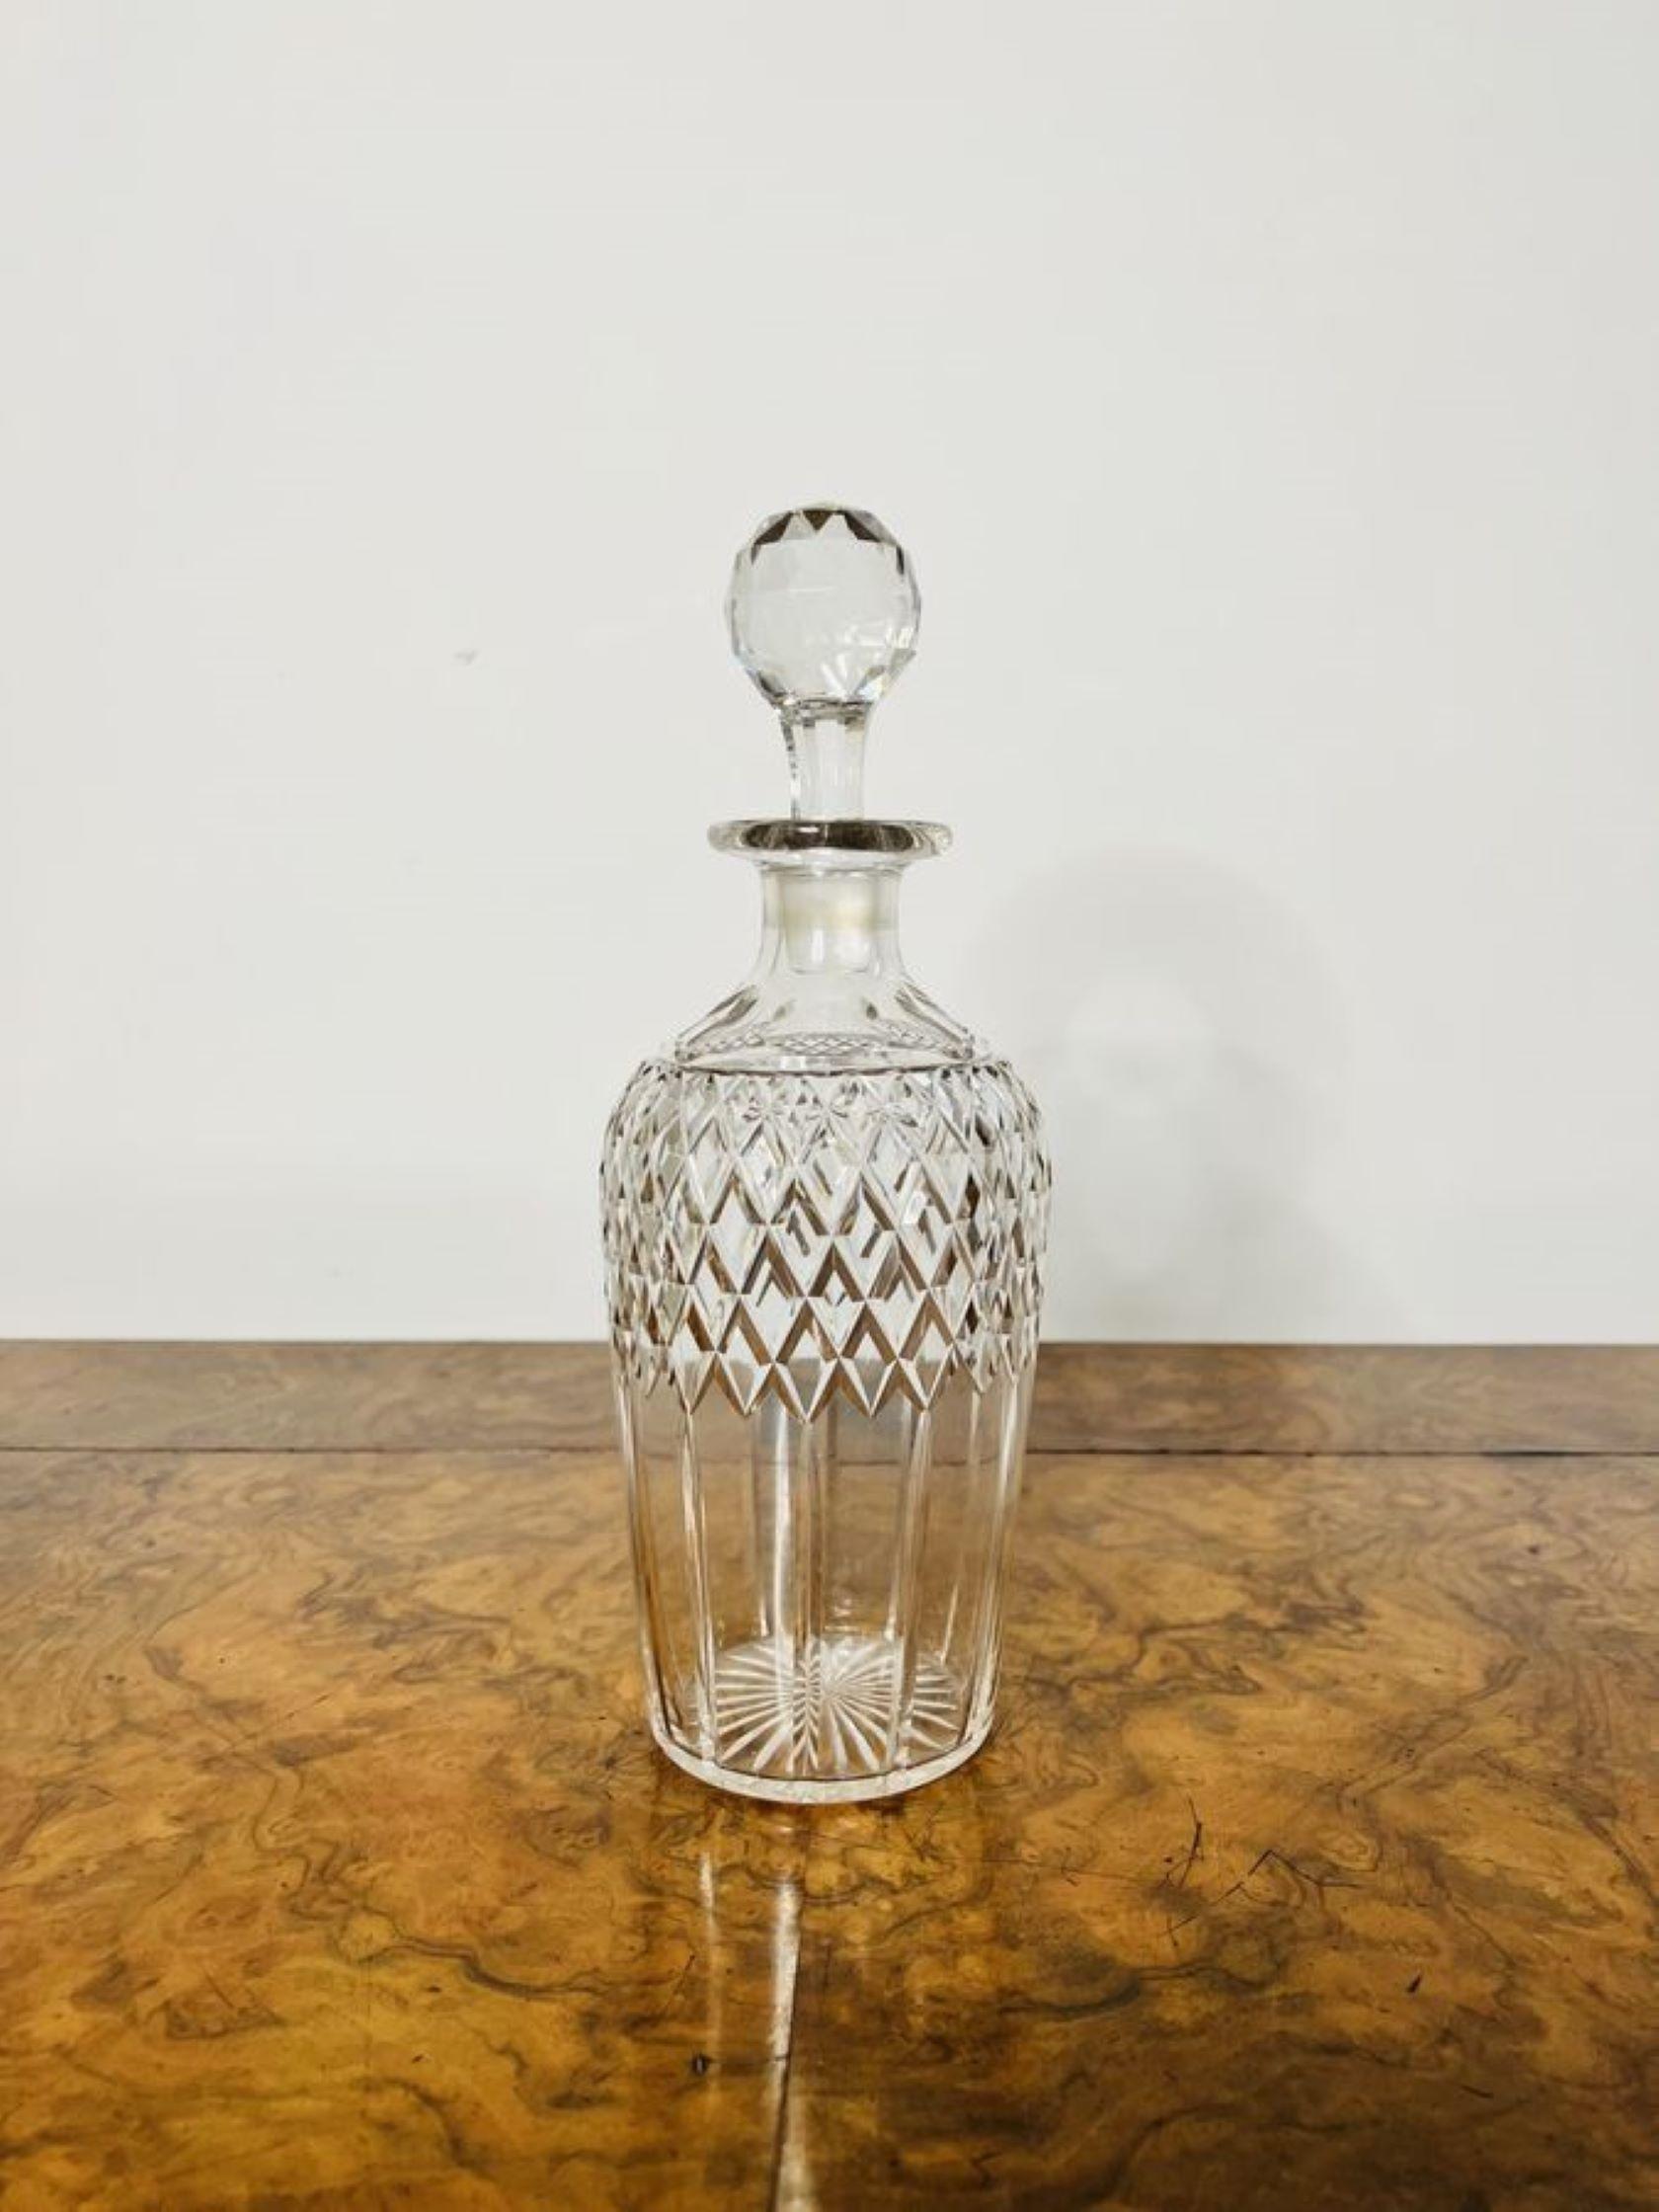 Antique Edwardian quality cut glass decanter having a quality cut glass decanter with the original stopper.

D. 1900